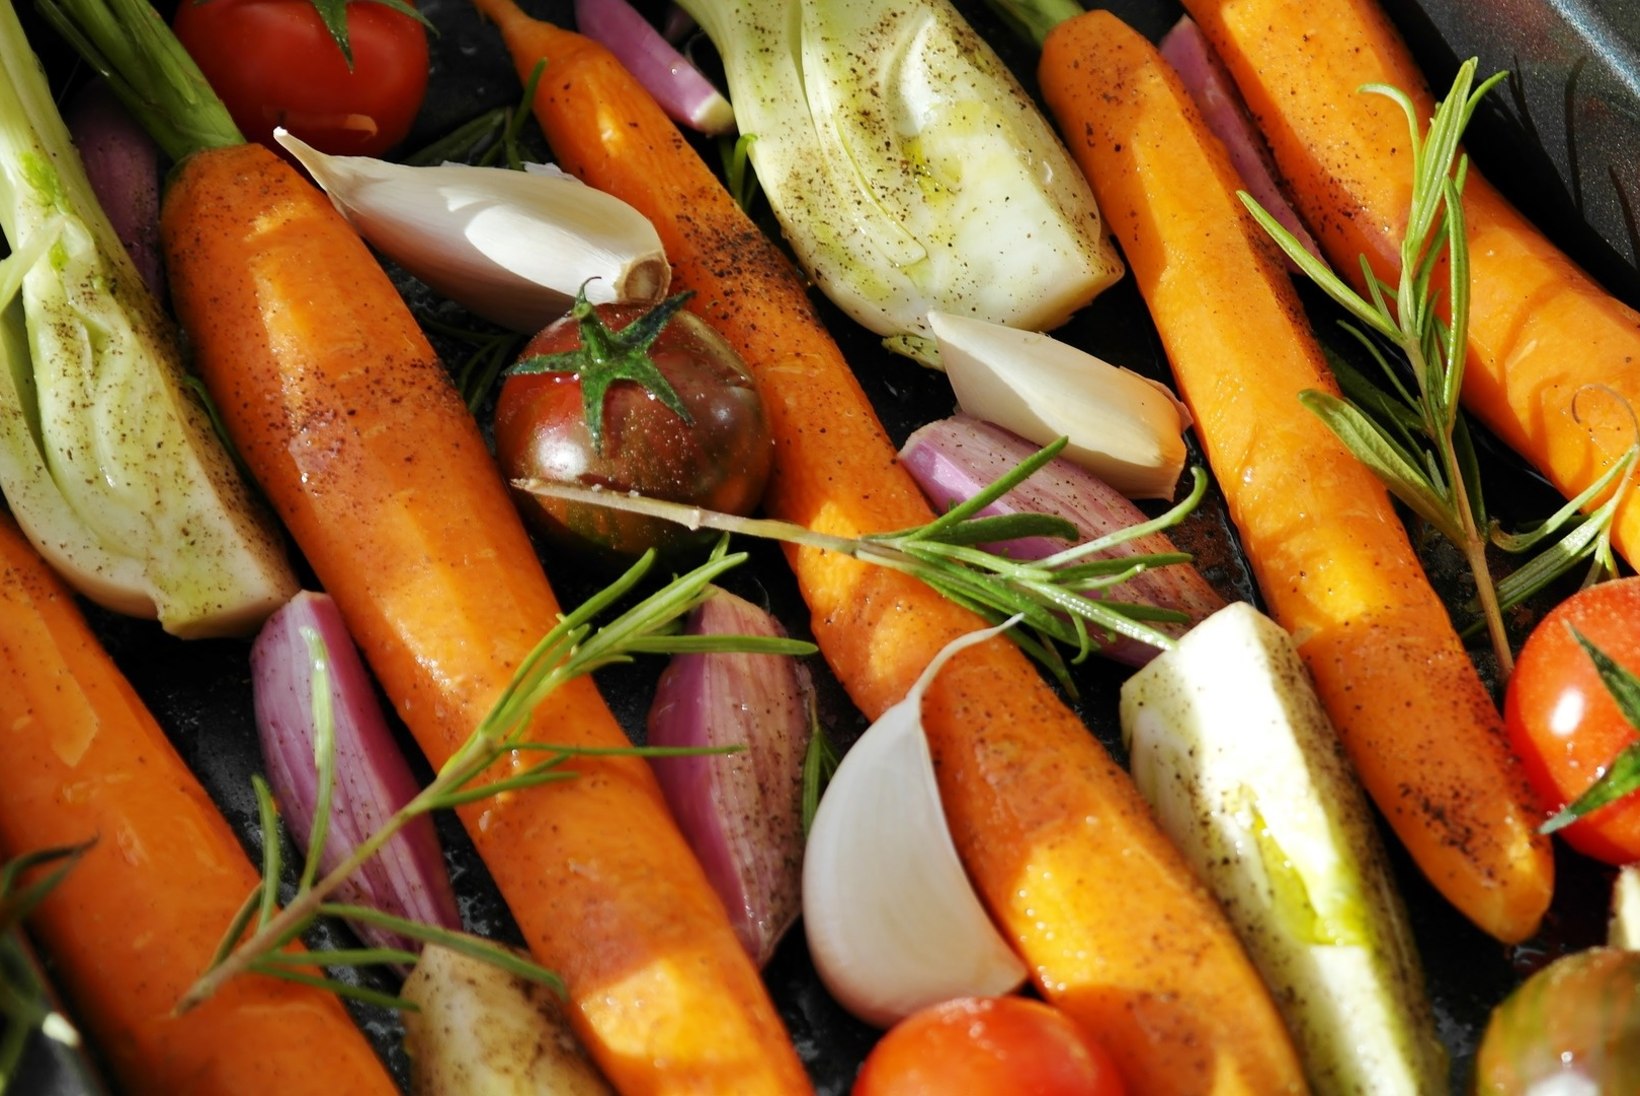 Gastronoomia saladused: kuidas kokates küüslaugu maitset mõjutada ja köögiviljad krõmpsuks küpsetada?